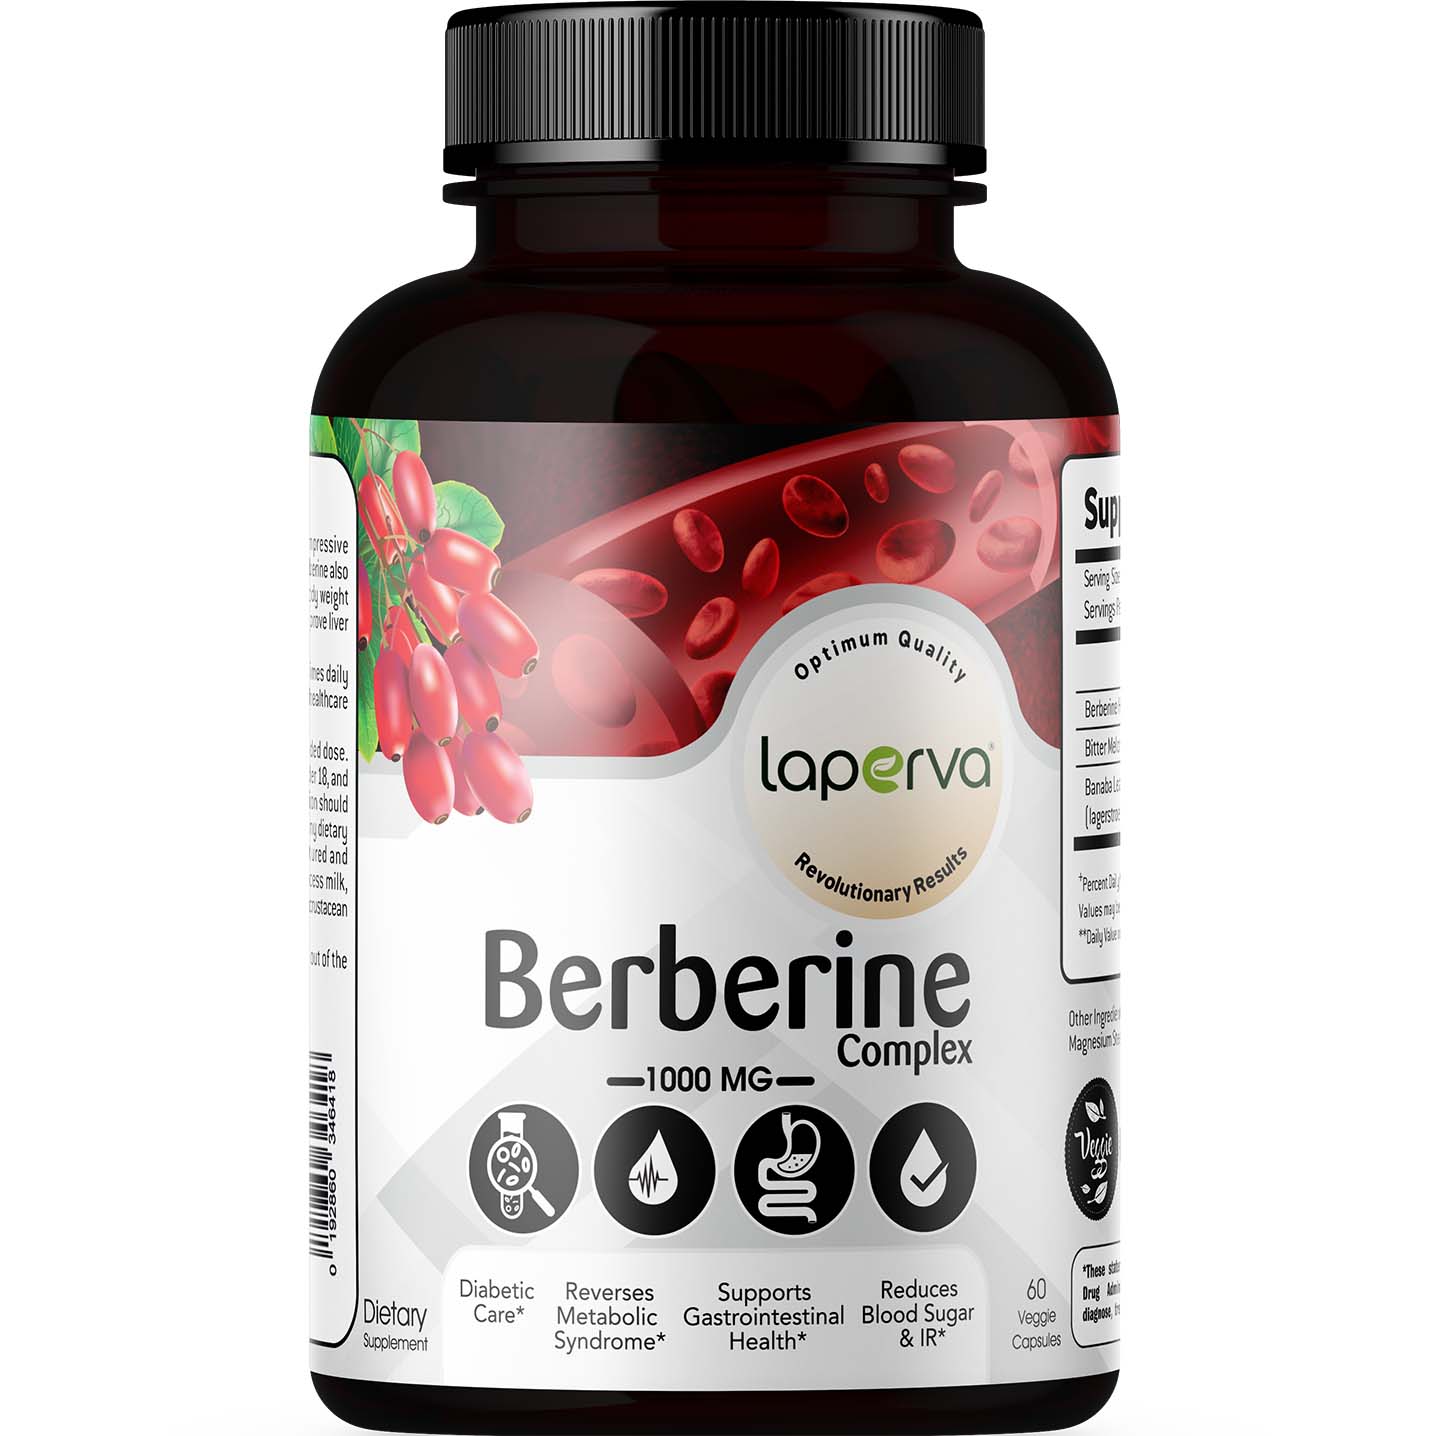 Laperva Berberine Complex, 1000 mg, 60 Veggie Capsules